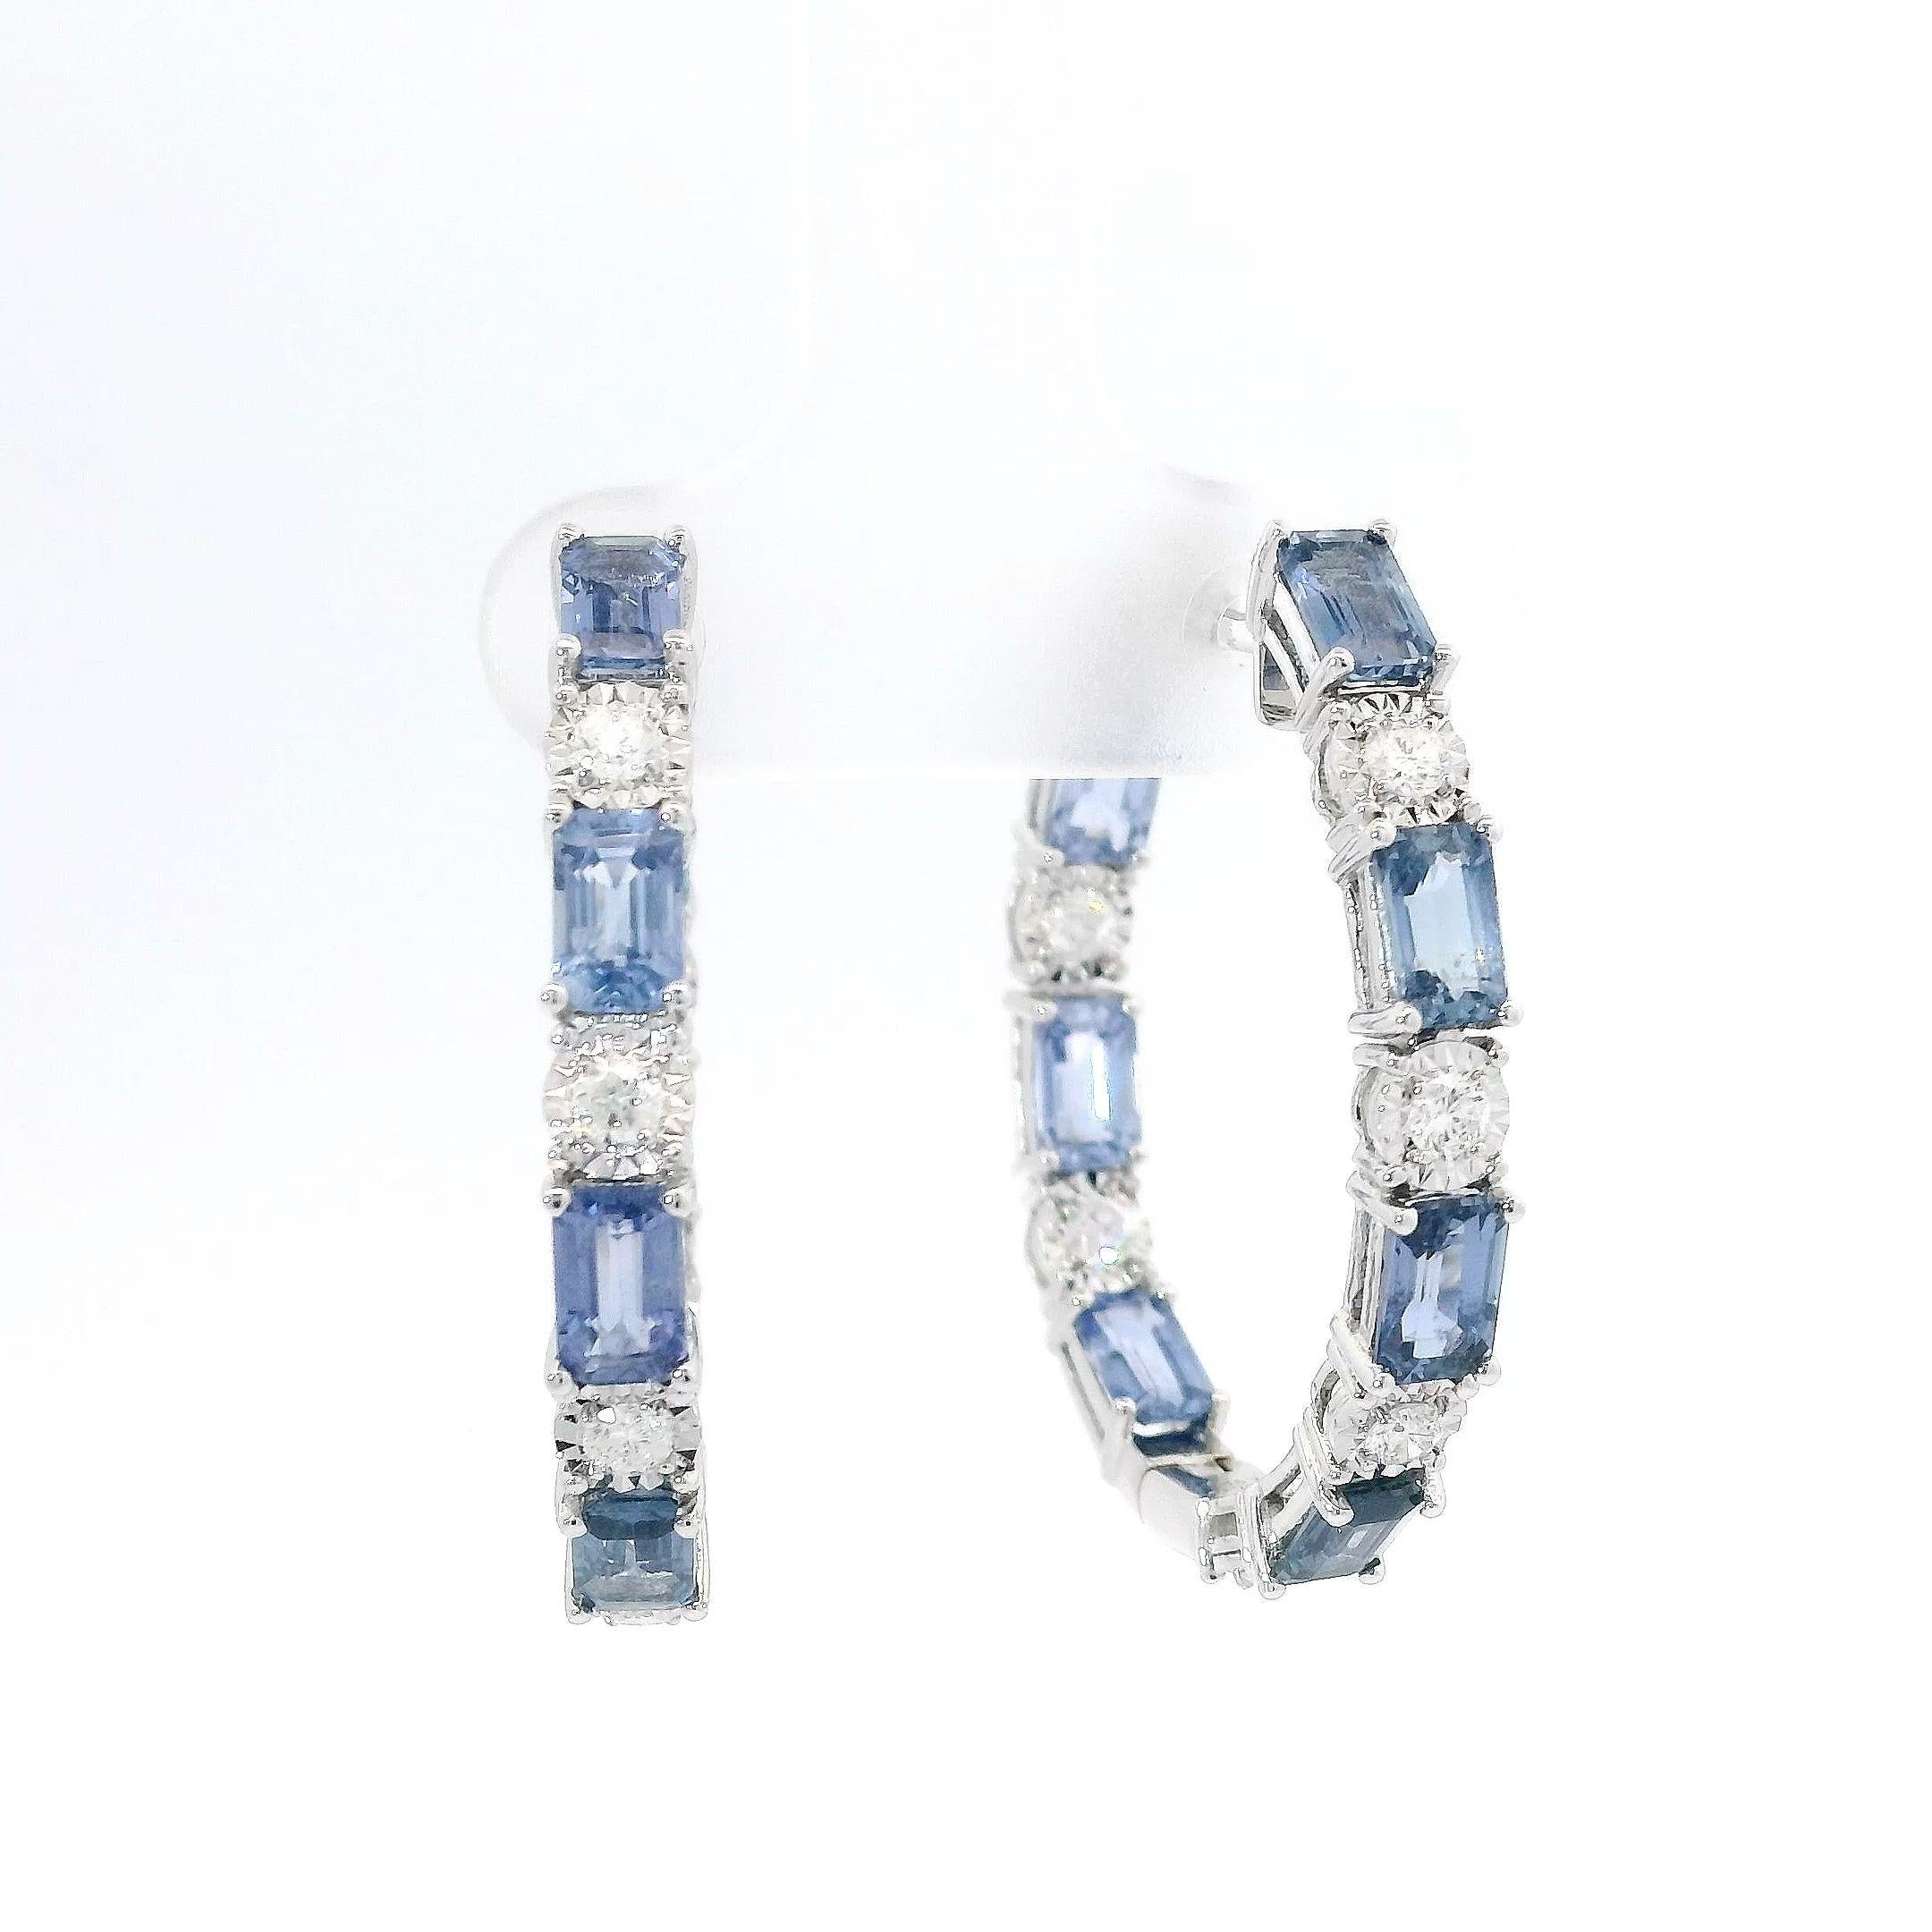 Contemporain Anneaux en or blanc 18 carats avec saphirs bleus et diamants